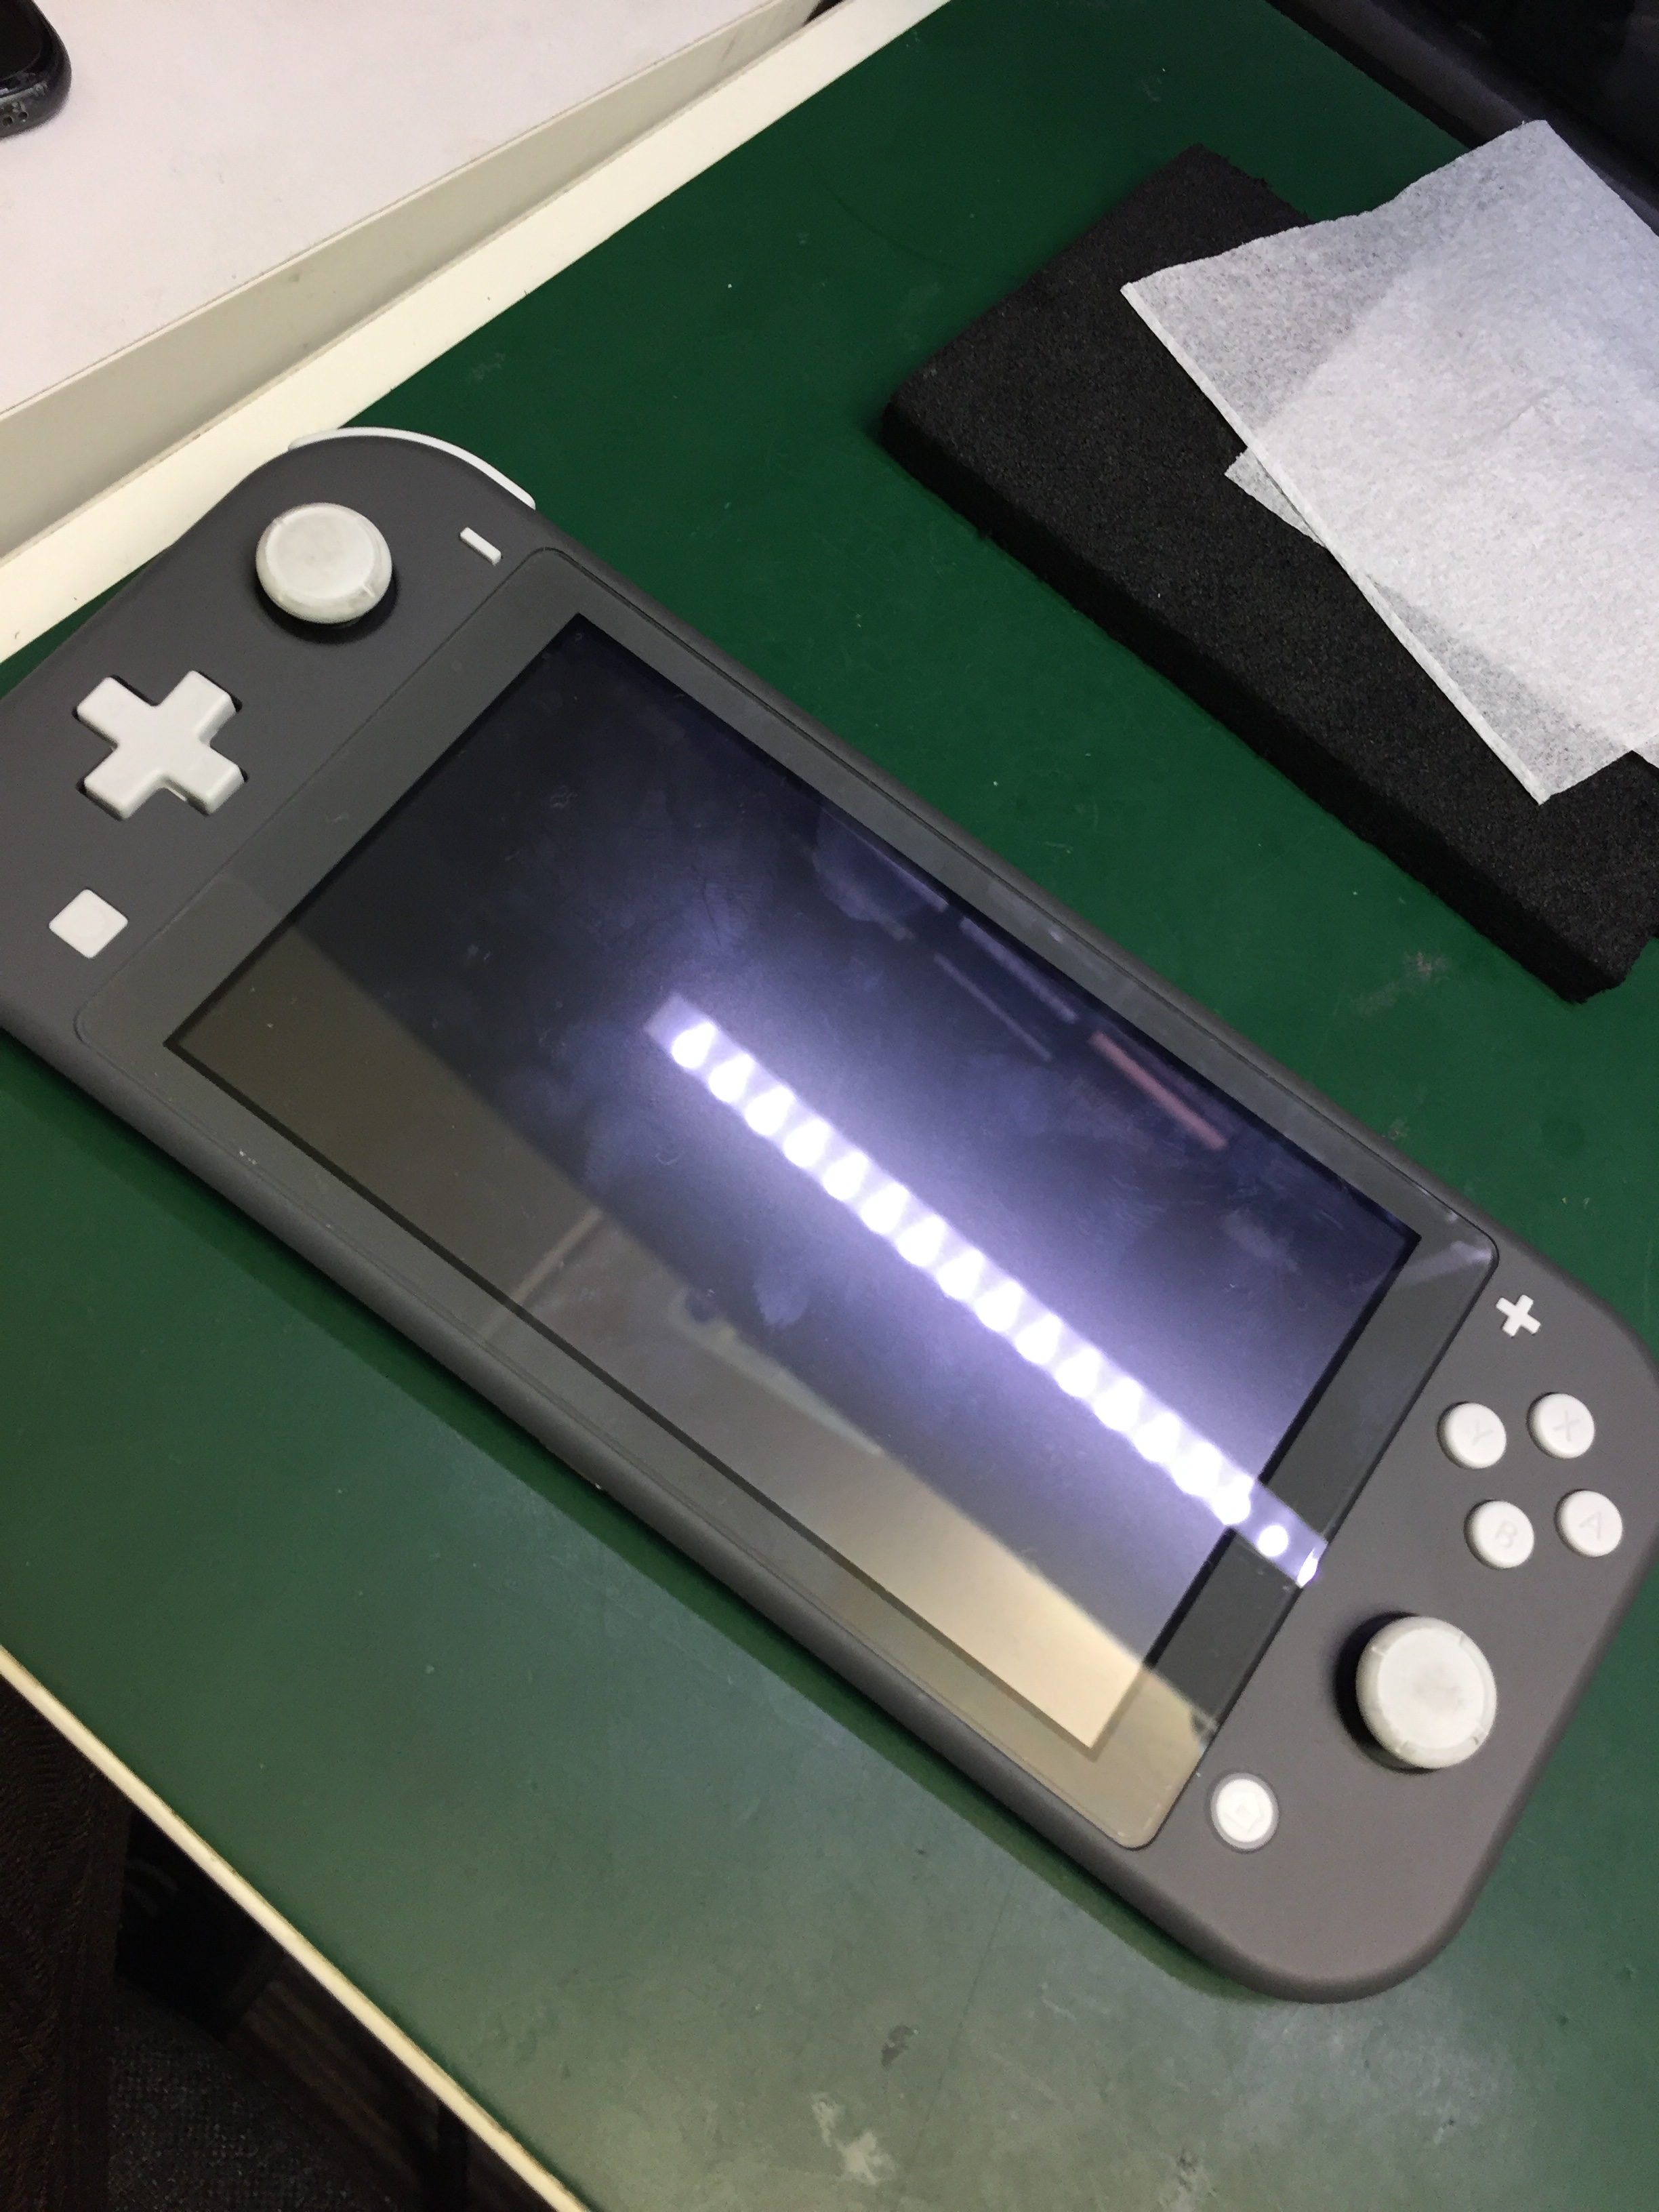 お風呂でポケモンをやっていたらうっかり落としてしまった Nintendo Switch Liteの水没復旧修理を行いました Nintendo3ds Switch Psp 修理のゲームホスピタル Nintendo3ds ニンテンドーds Psp 修理